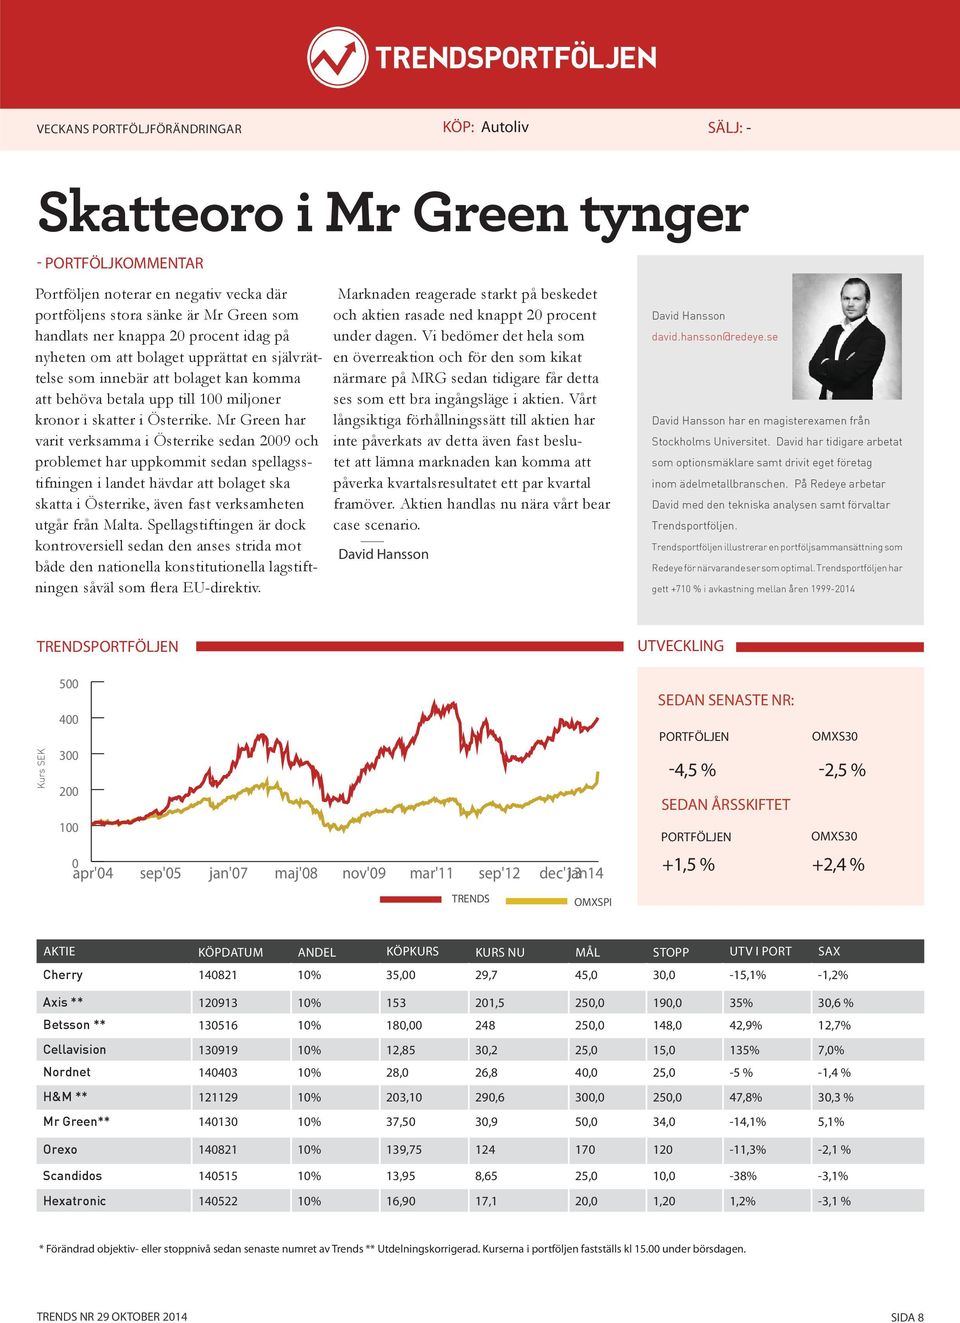 Mr Green har varit verksamma i Österrike sedan 2009 och problemet har uppkommit sedan spellagsstifningen i landet hävdar att bolaget ska skatta i Österrike, även fast verksamheten utgår från Malta.